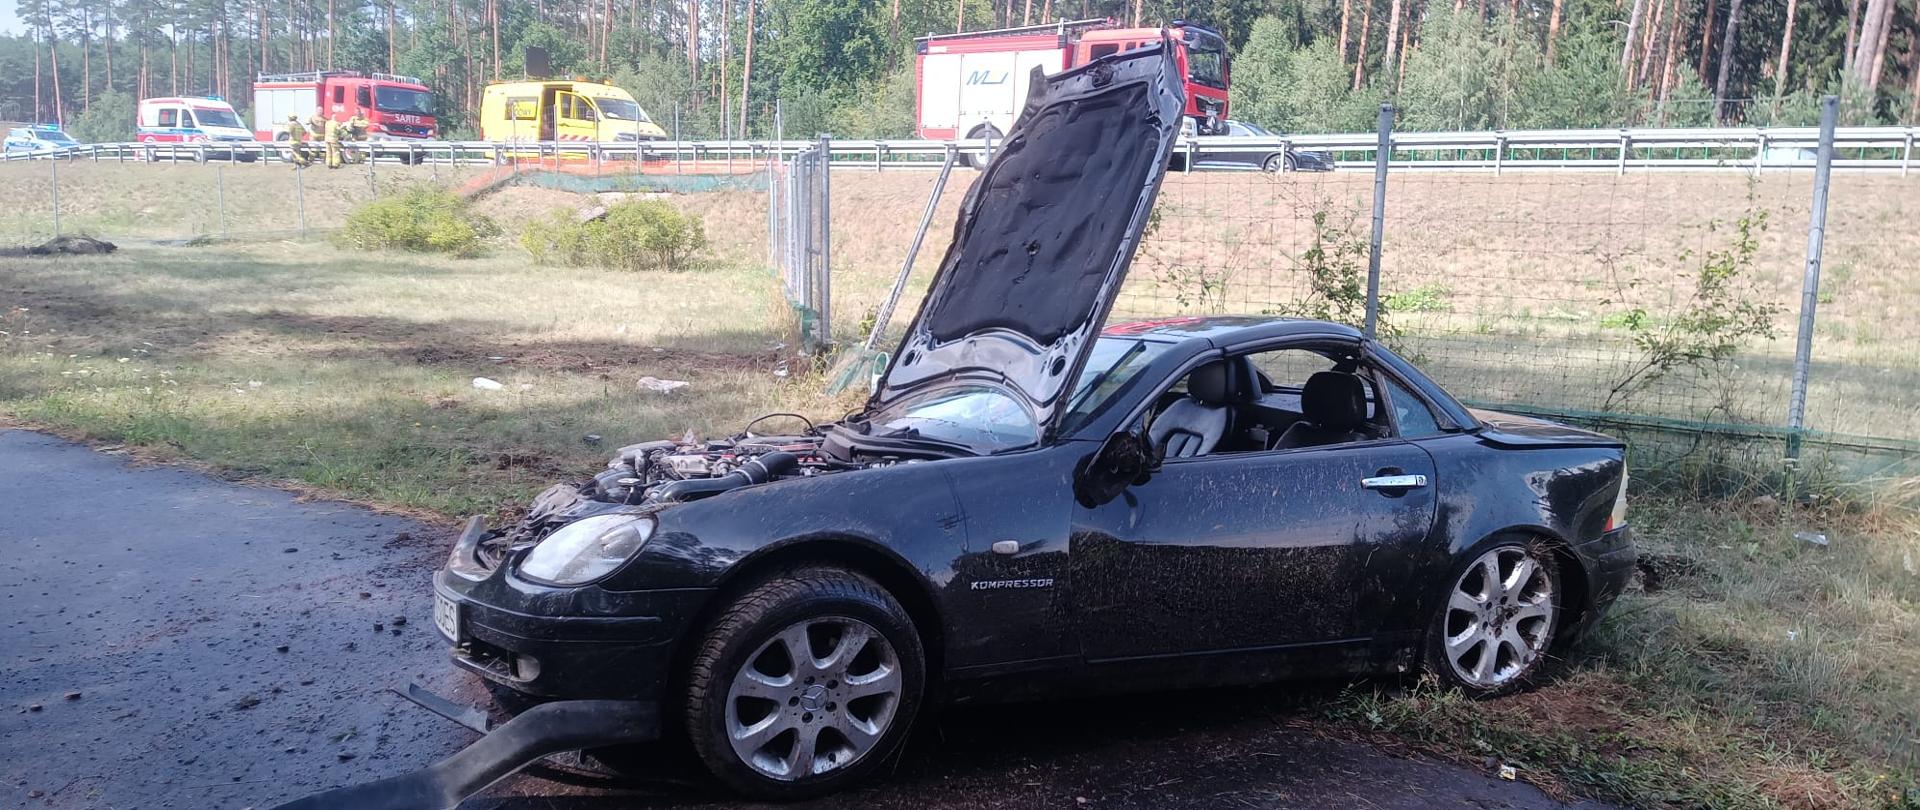 Na zdjęciu widać uszkodzony samochód z podniesioną maską, w tle samochody pożarnicze